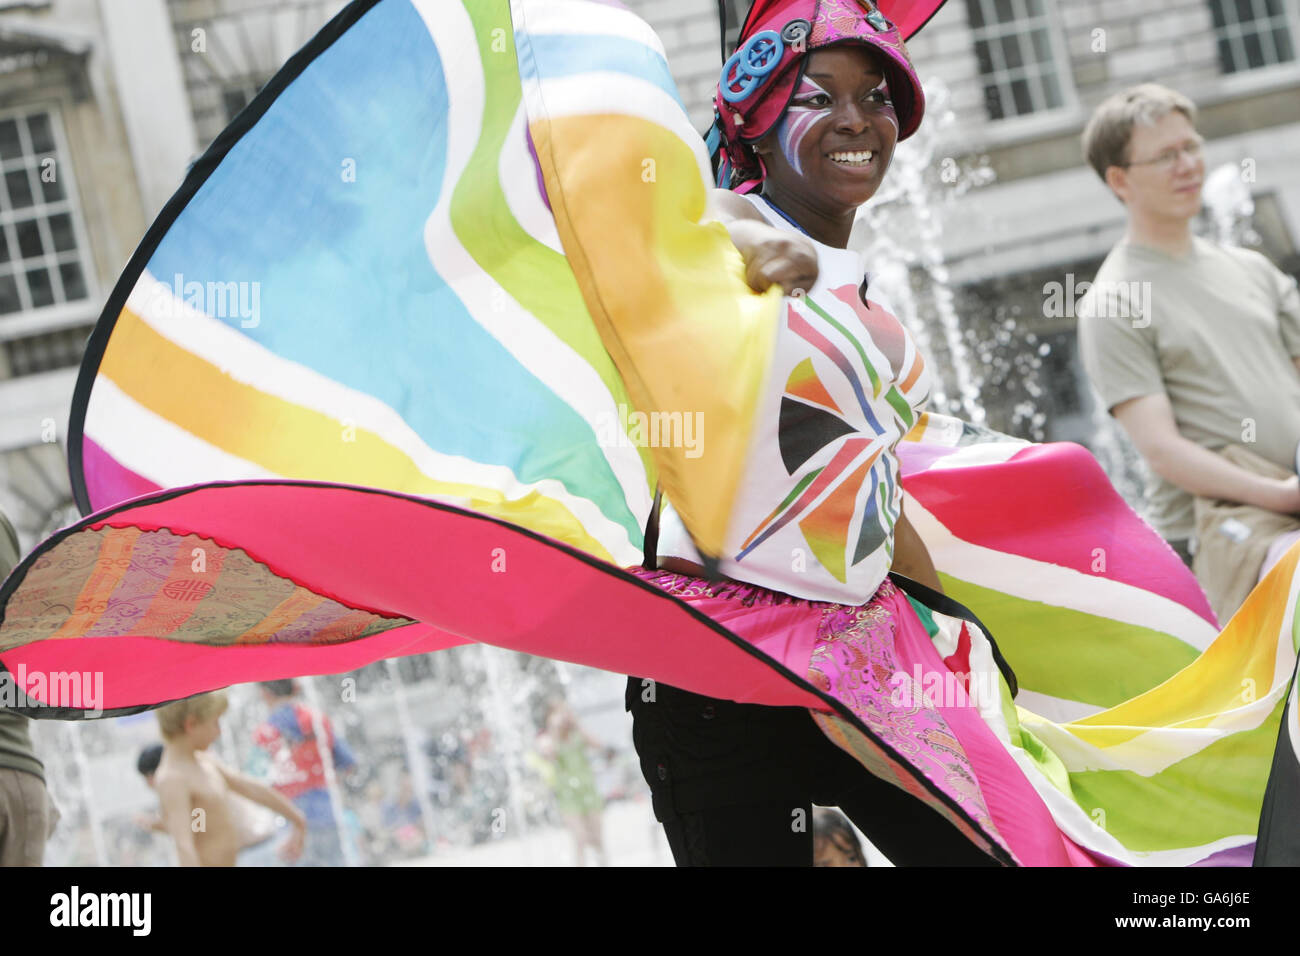 Shayanna Dyer-Harris del conjunto de artes del carnaval Kinetika Bloco Band ayuda a lanzar el nuevo fin de semana adolescente Freespace en Somerset House como parte del festival de artes familiares de cuatro días de tiempo libre. Foto de stock